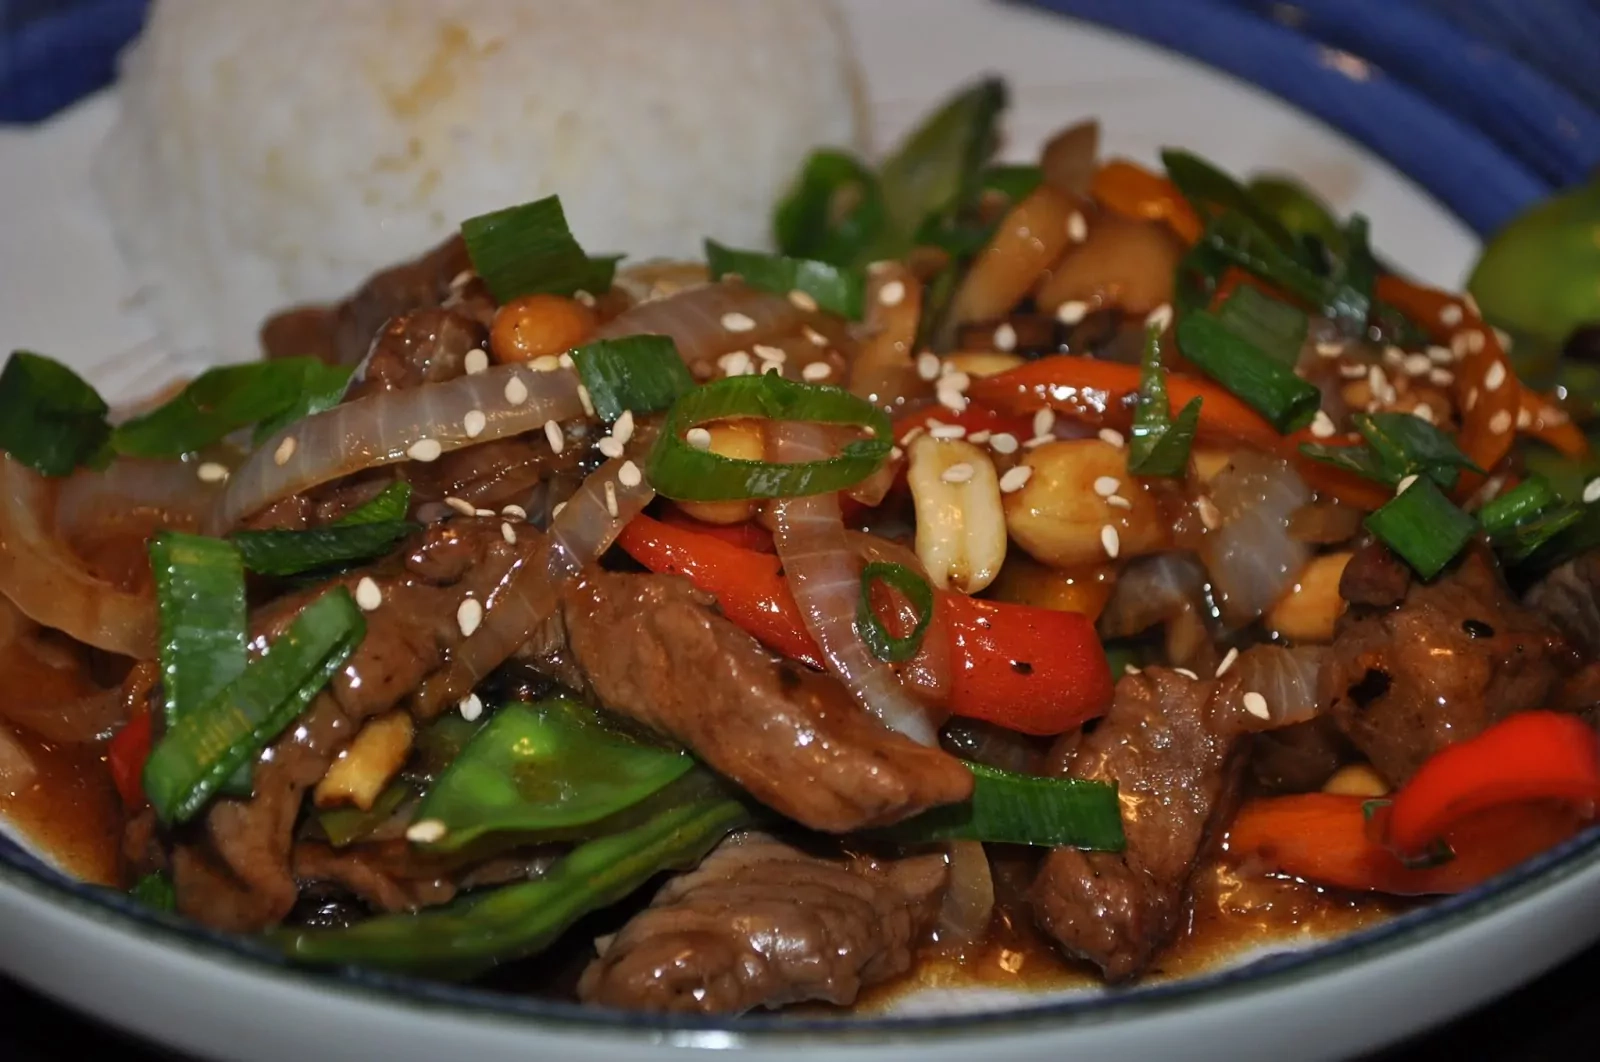 Liellopu gaļa ķīniešu valodā: liellopu gaļas un dārzeņu stir-fry un terijaki (terijaki) mērce | Receptes